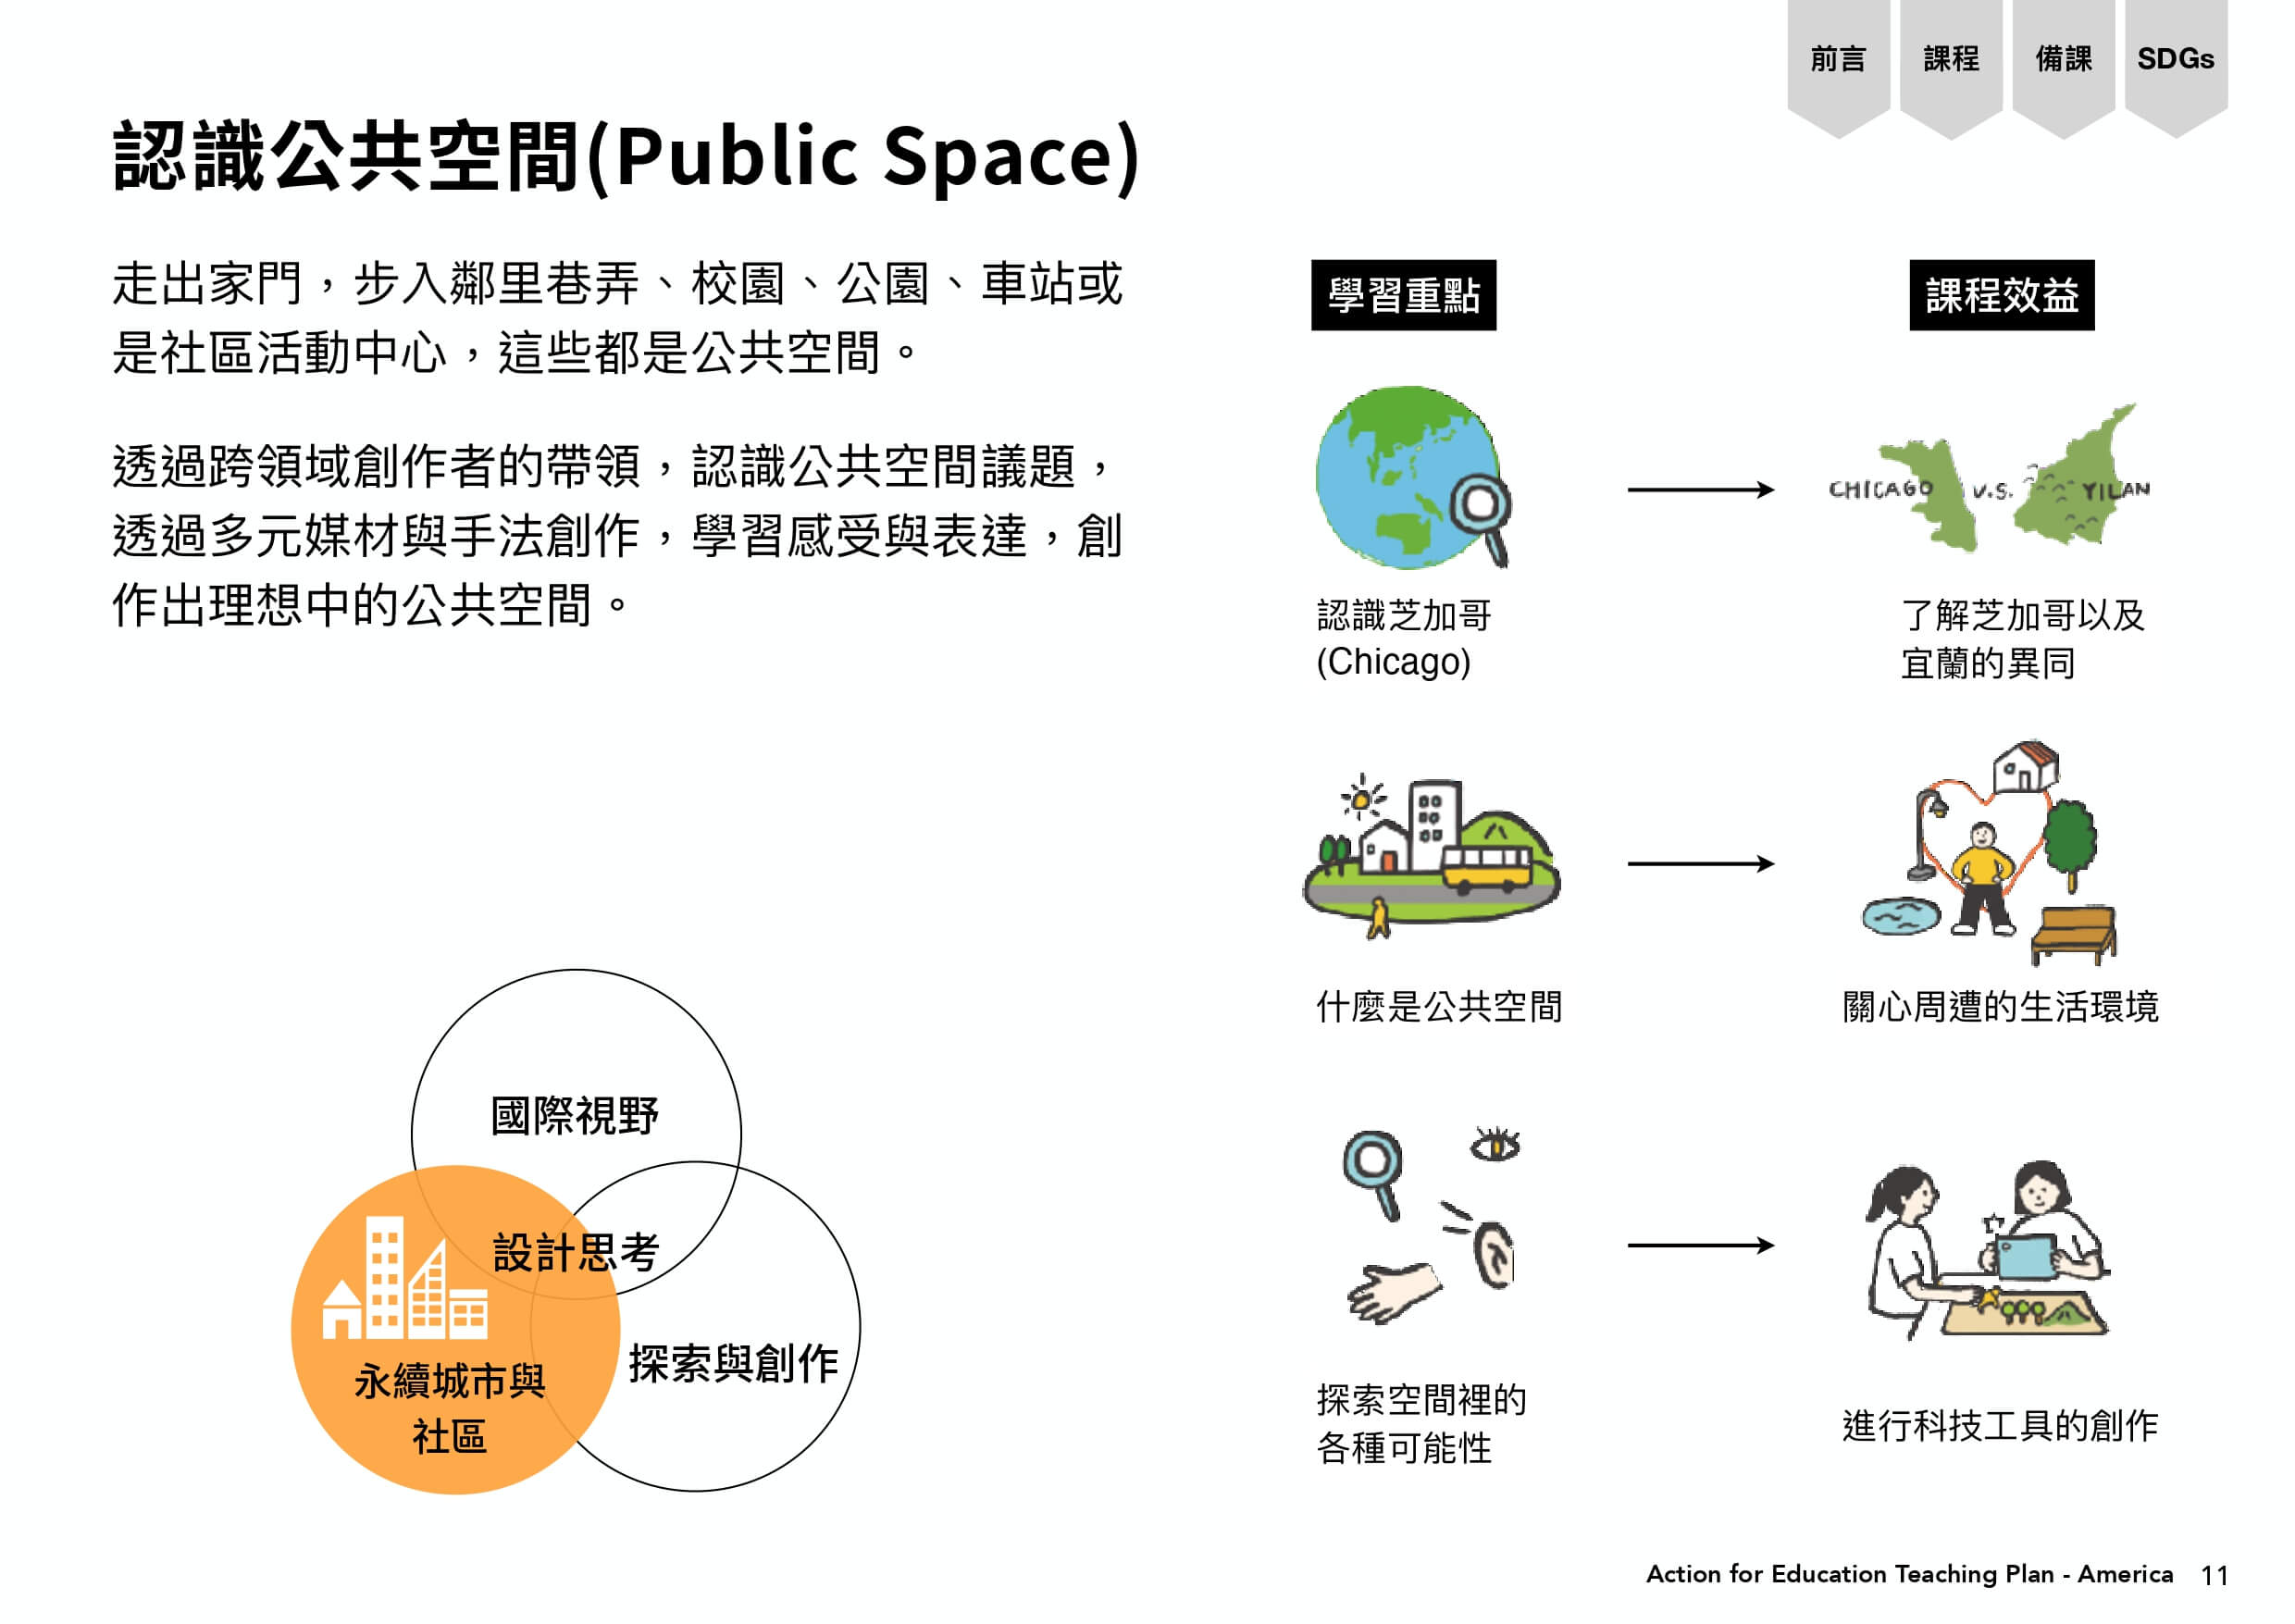 公共空間（public space）簡介，走出家門，步入鄰里巷弄、校園、公園、車站或社區活動中心，都是公共空間